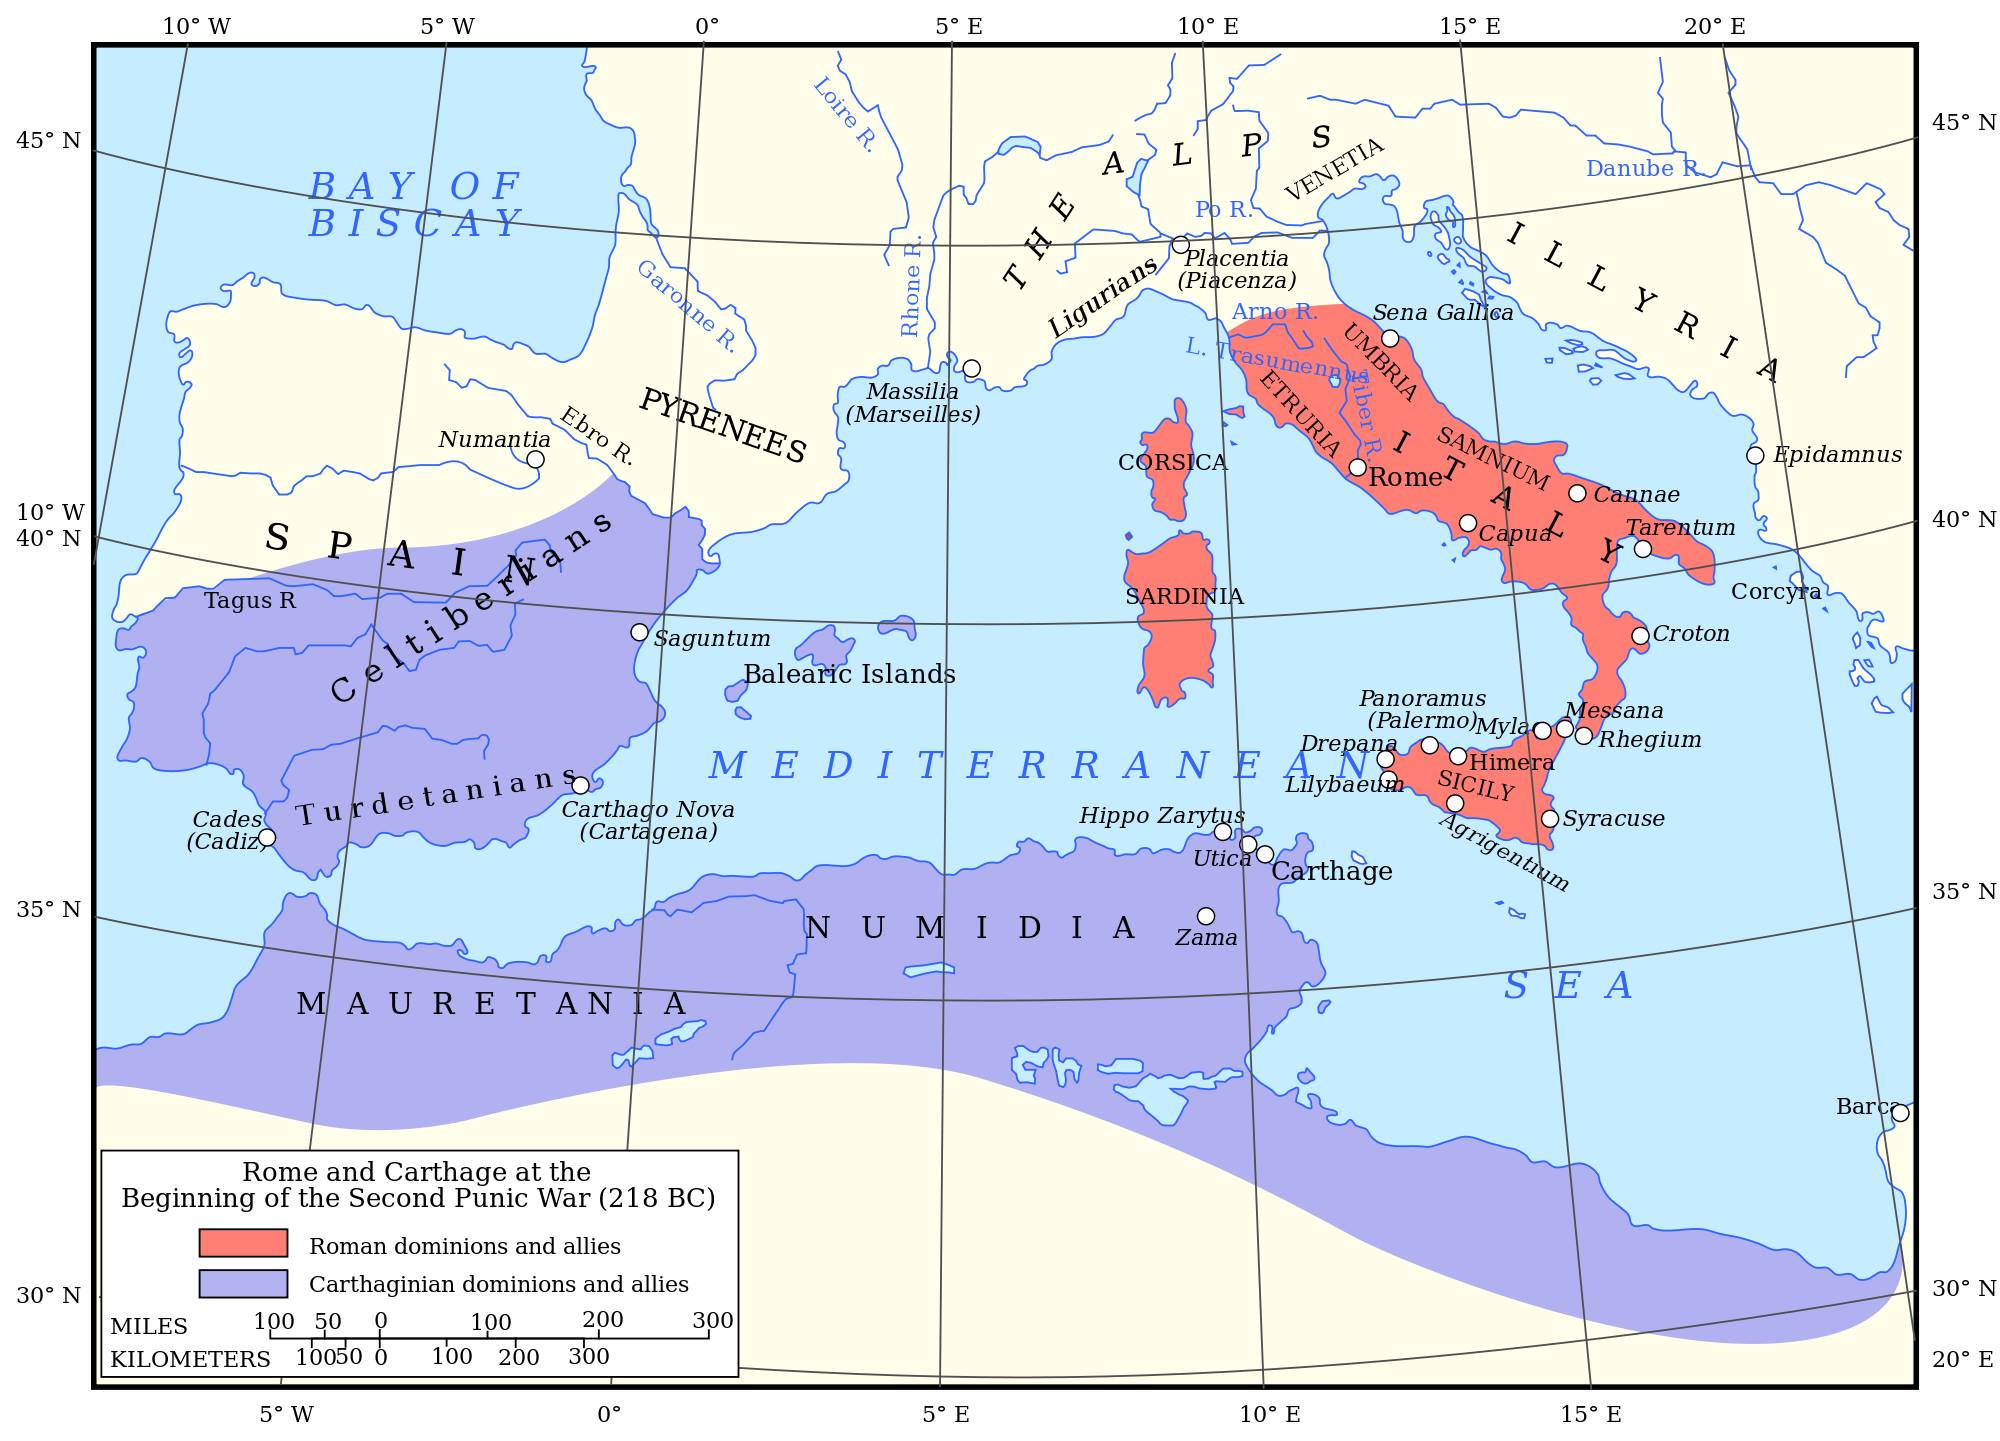 Hannibal vs. Rimania – Vojská v Druhej púnskej vojne I.